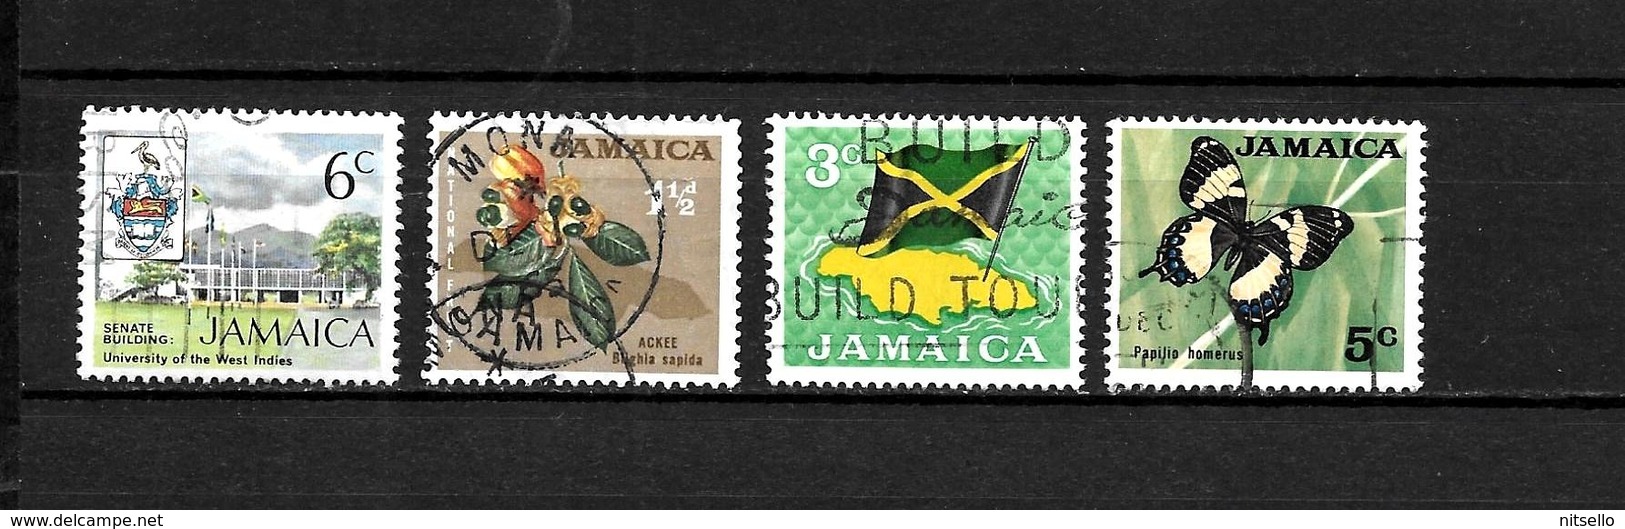 LOTE 1991  ///    JAMAICA    ¡¡¡ OFERTA - LIQUIDATION !!! JE LIQUIDE !!! - Jamaica (1962-...)